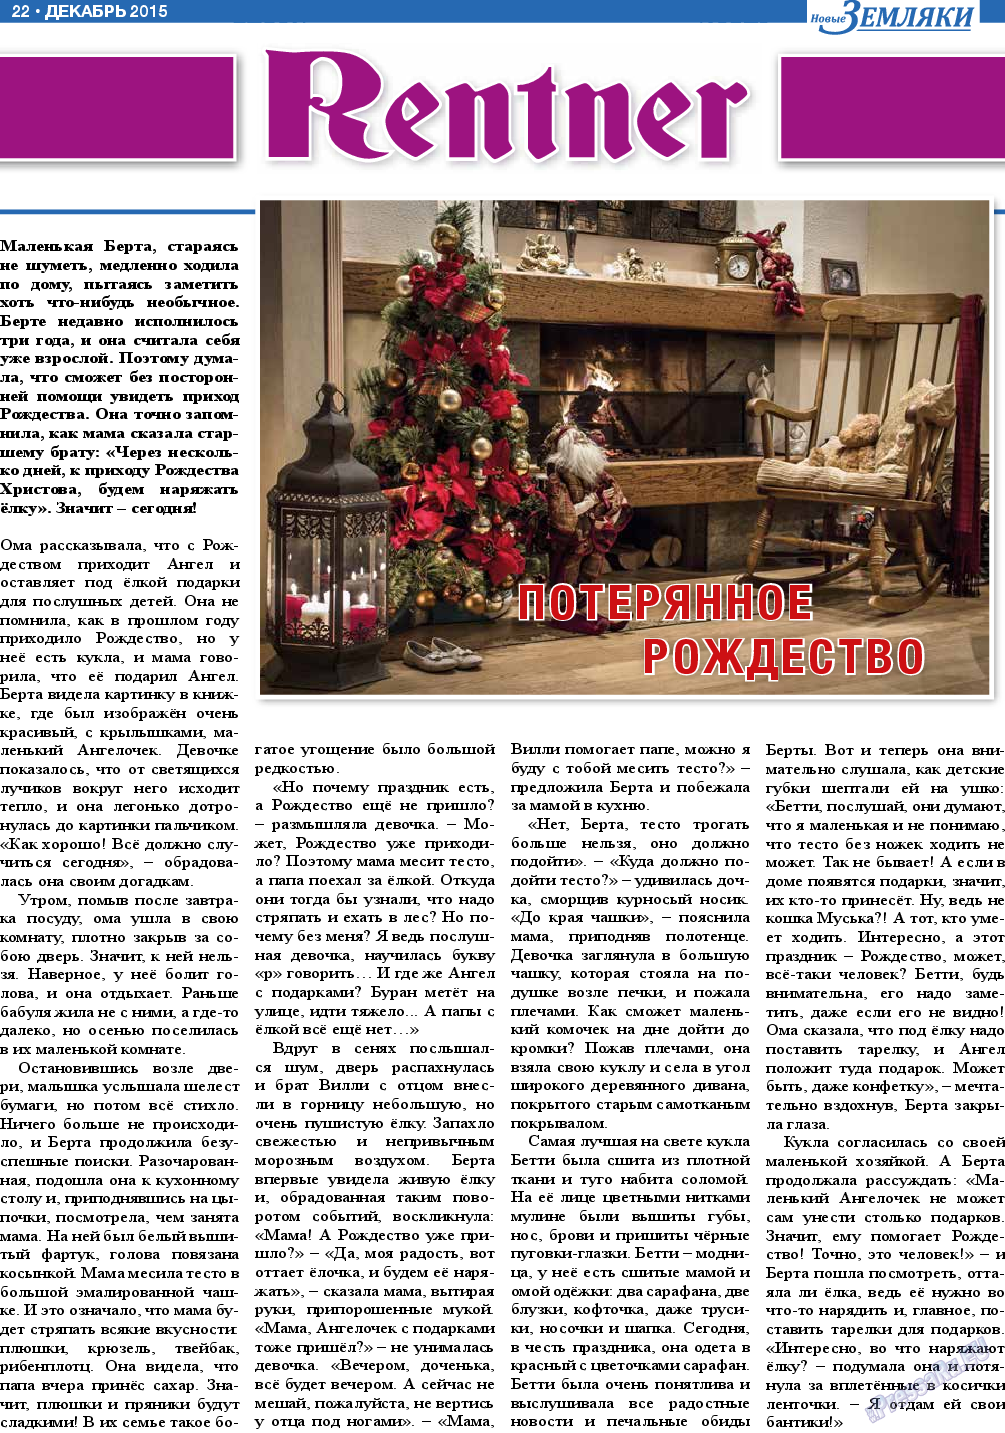 Новые Земляки (газета). 2015 год, номер 12, стр. 22